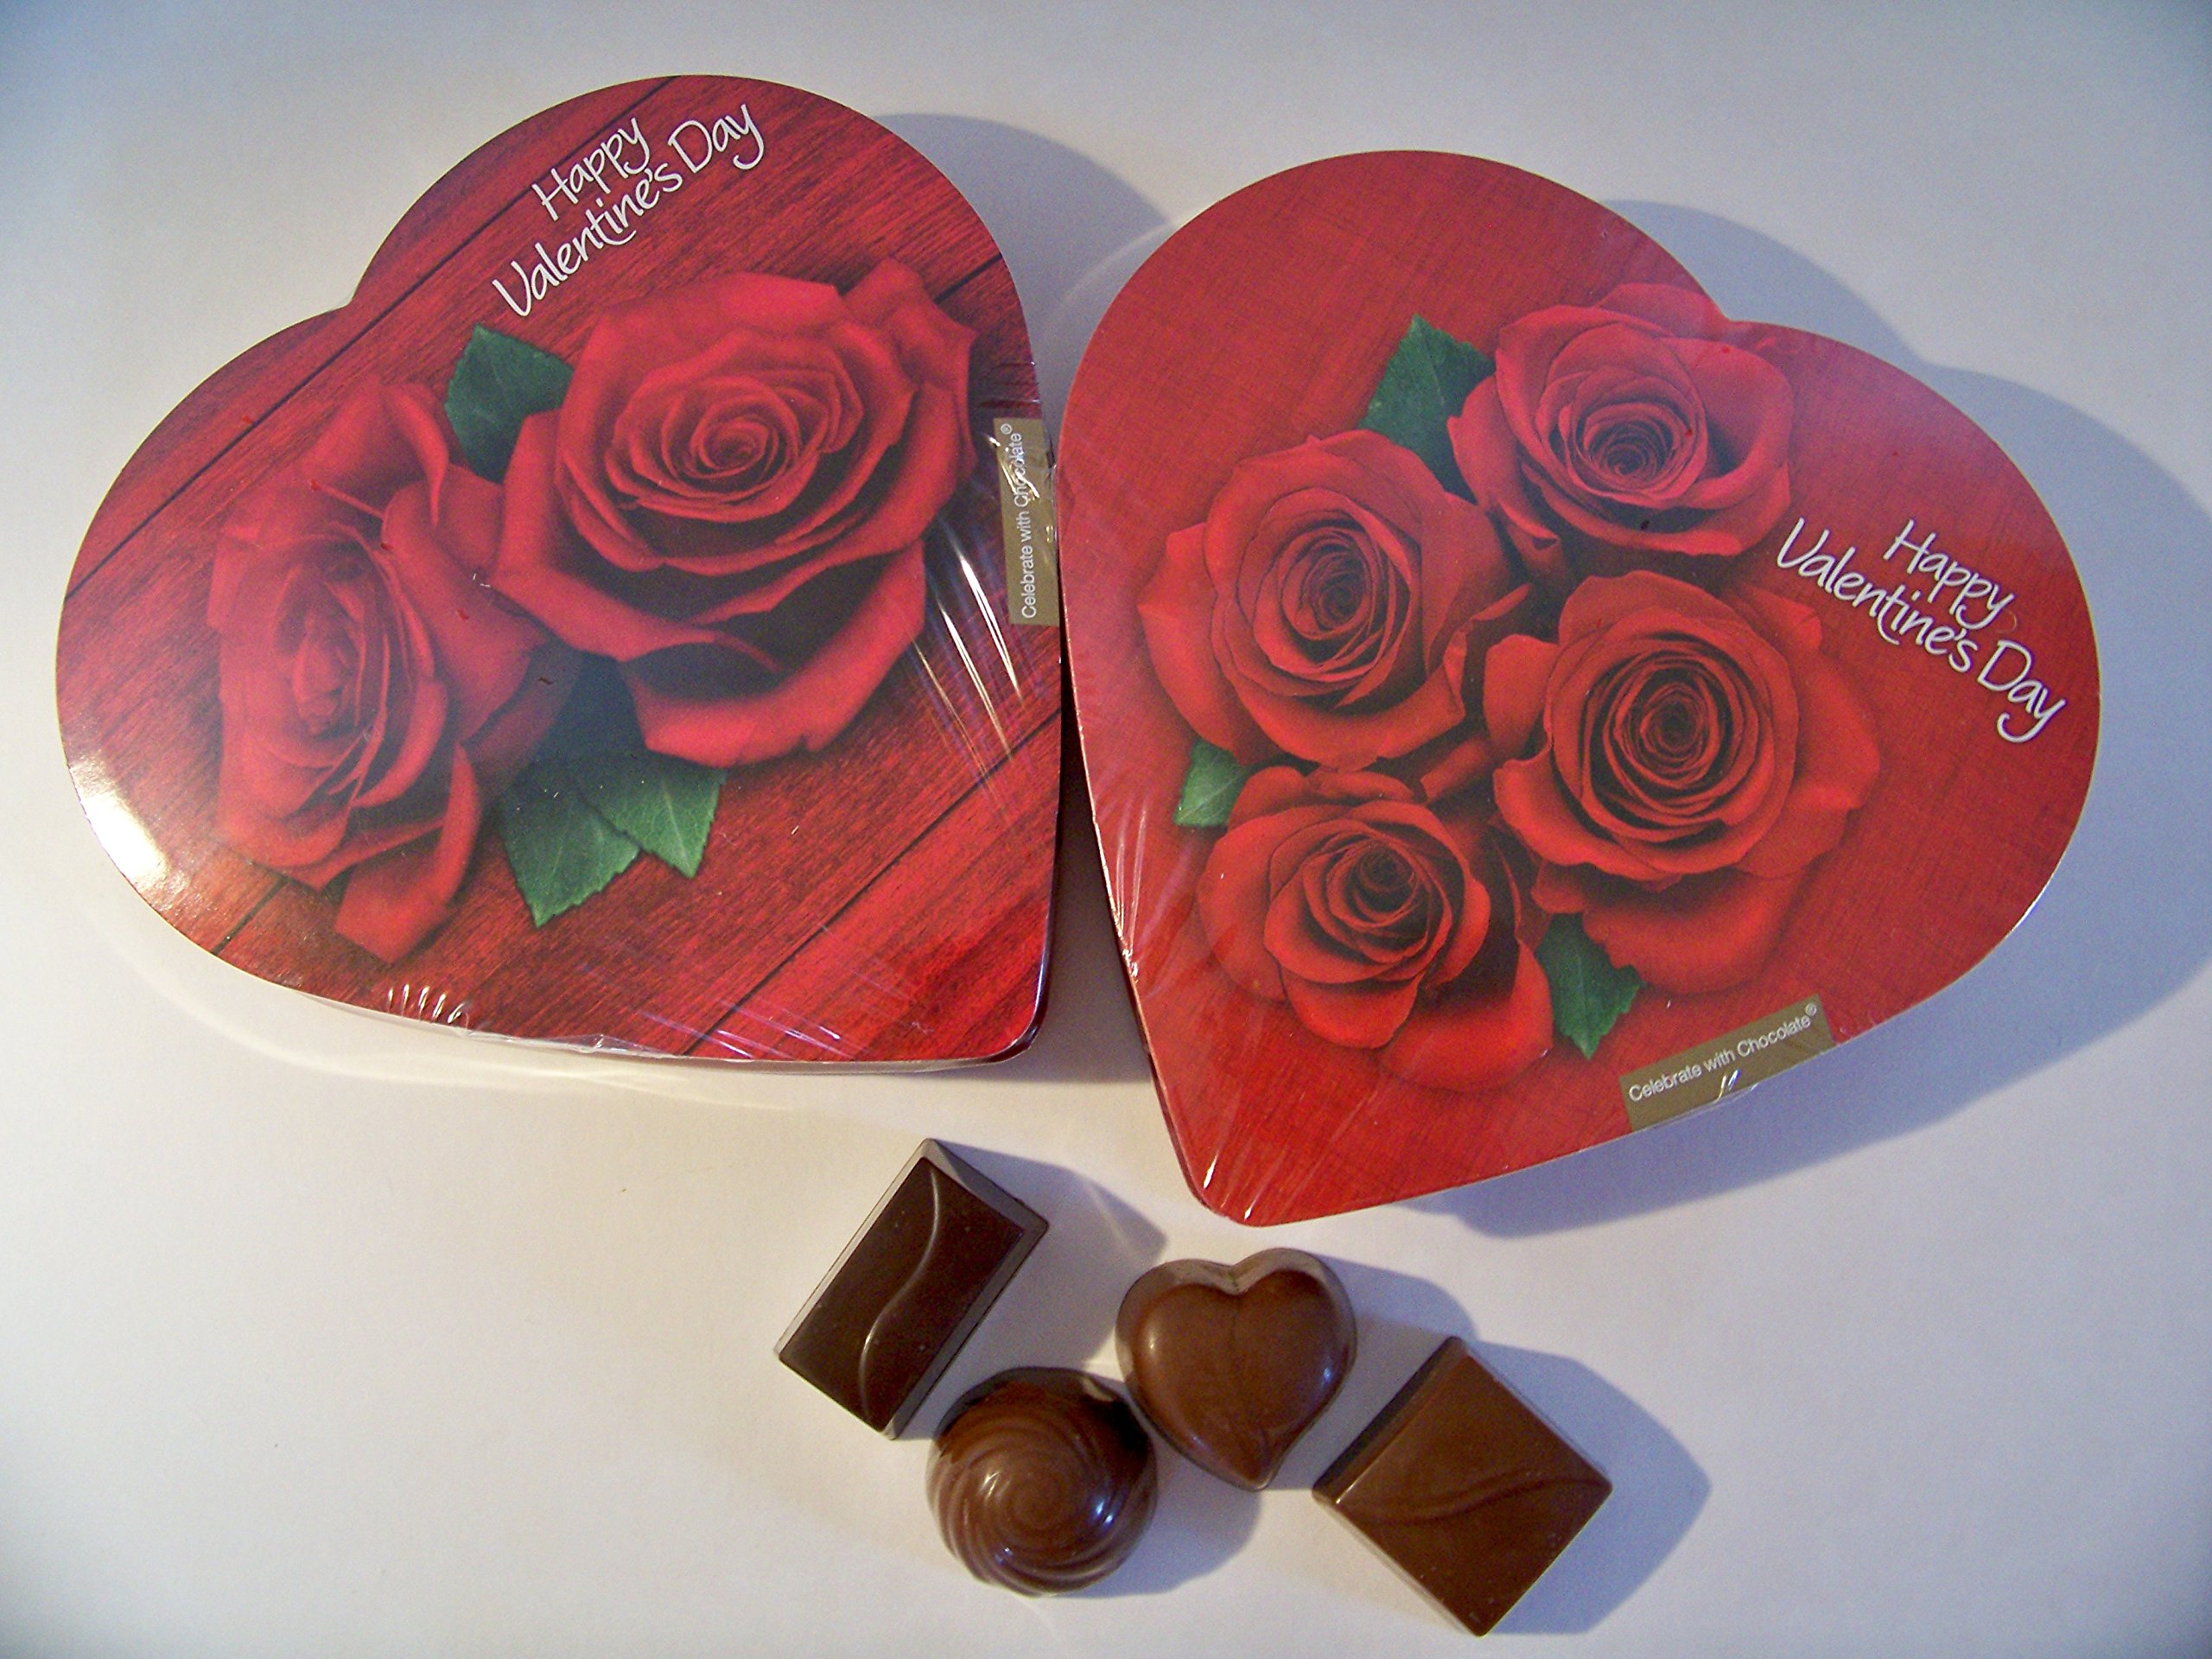 Heart-shaped box of chocolates